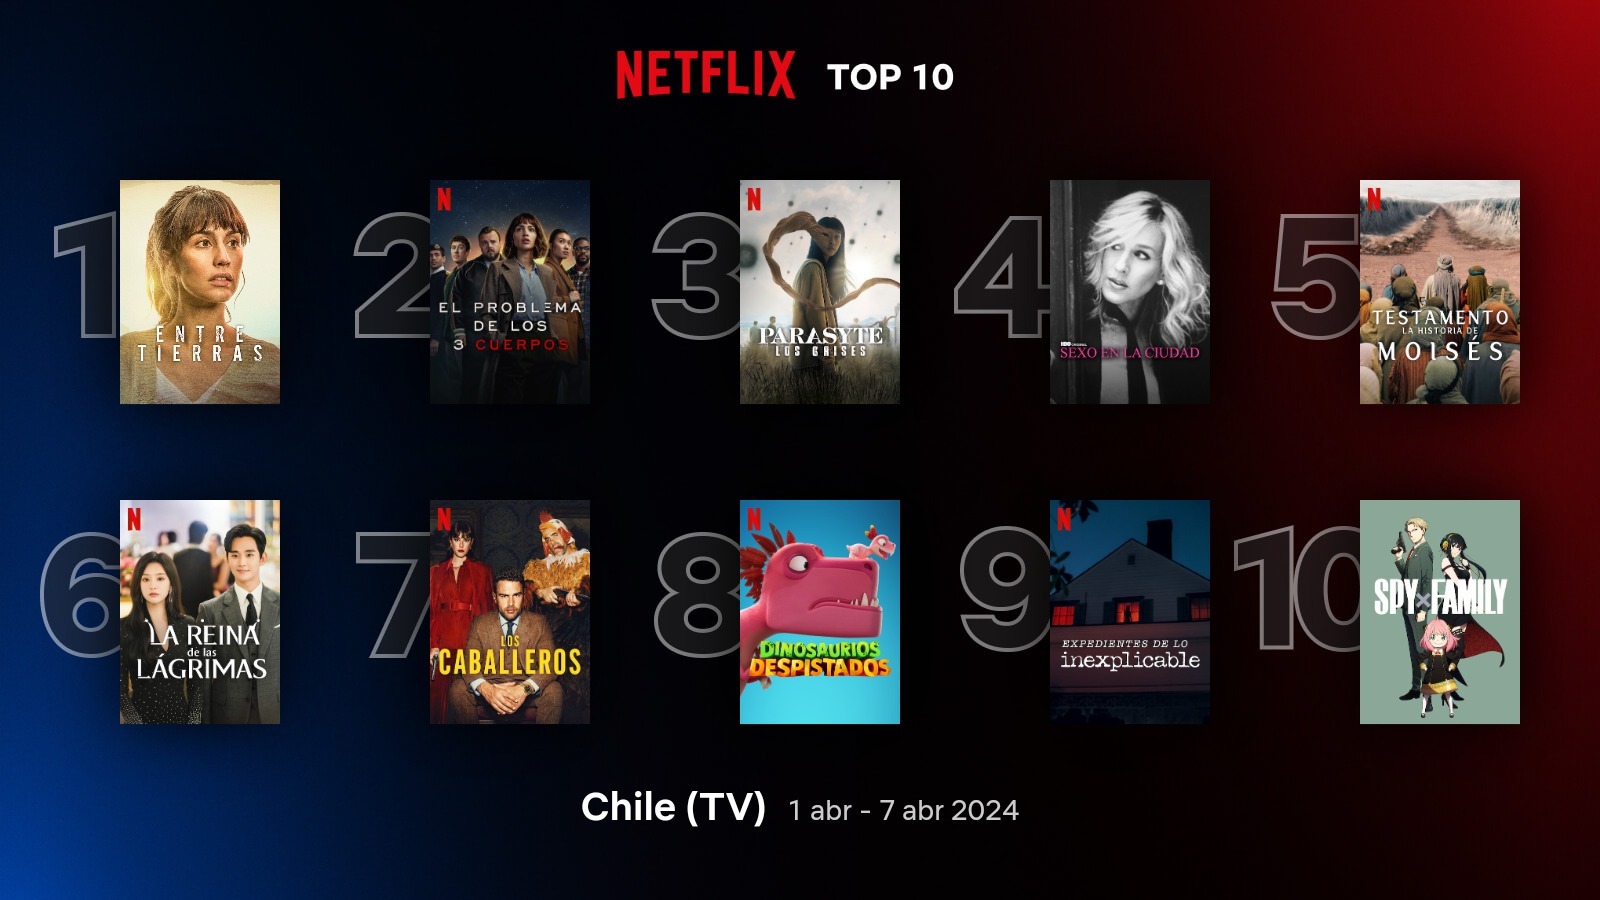 TOP 10 de series en Chile